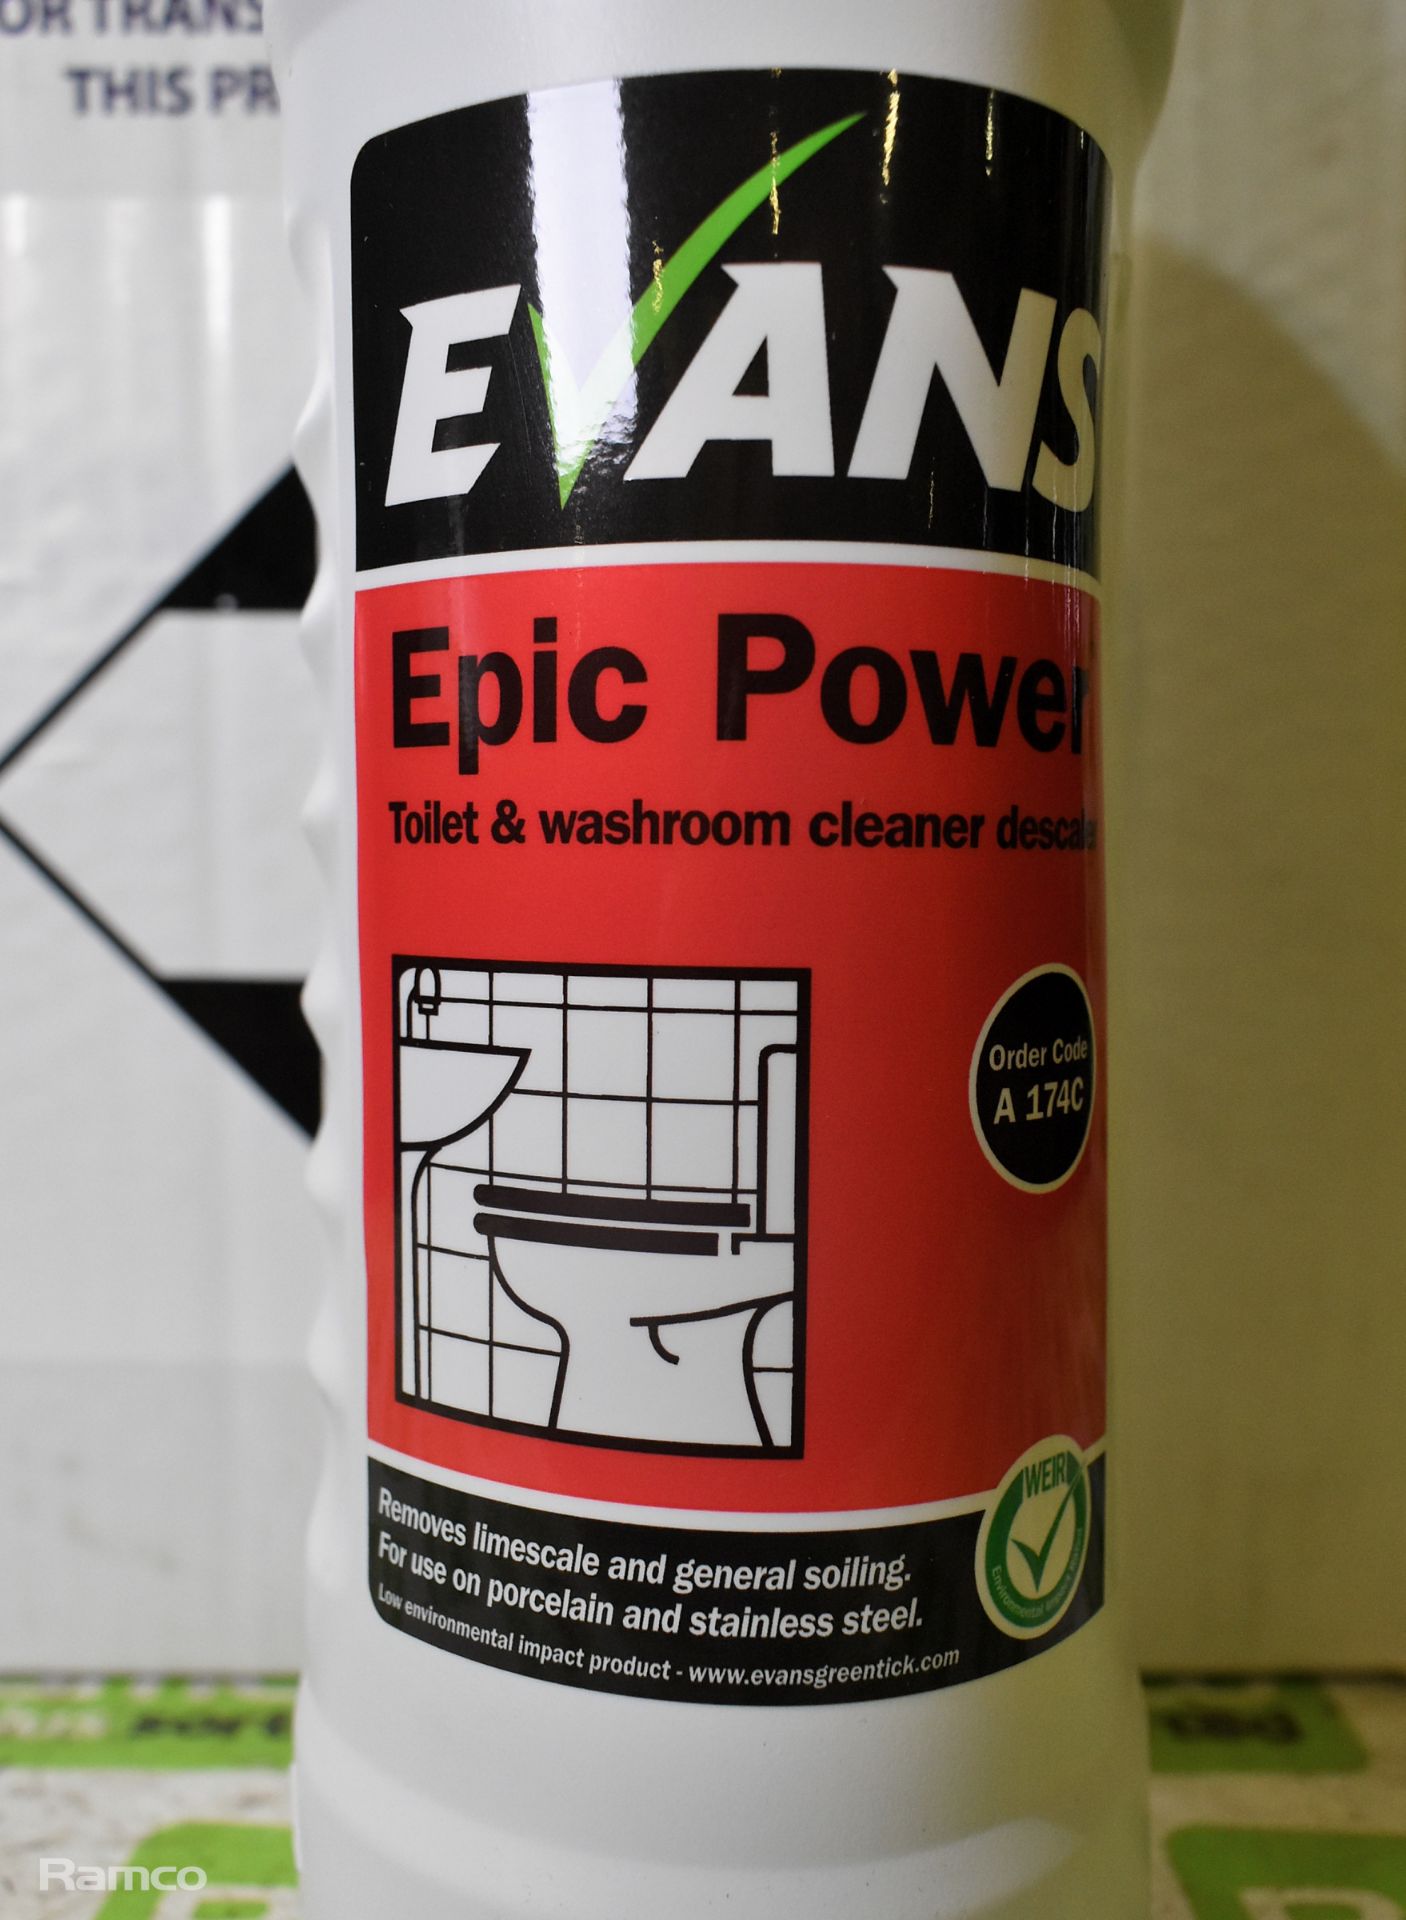 30x 1L bottles of evans epic power toilet and washroom cleaner descaler - Image 5 of 6